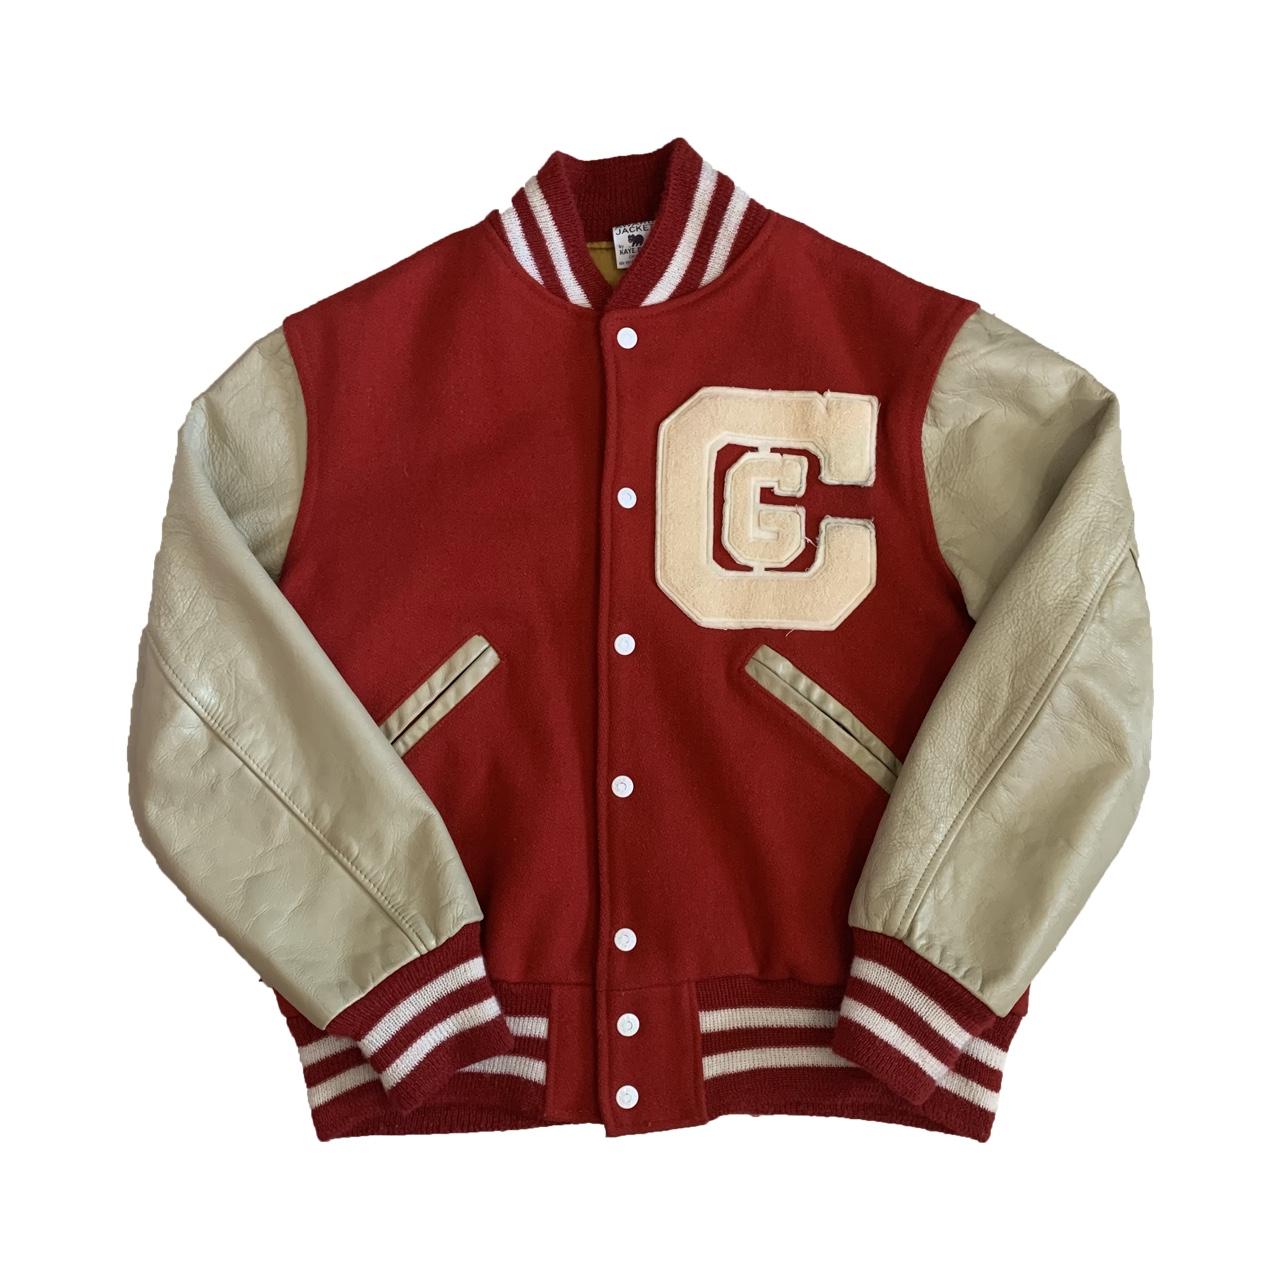 1960s Kaye Bros Varsity jacket This is the vintage... - Depop